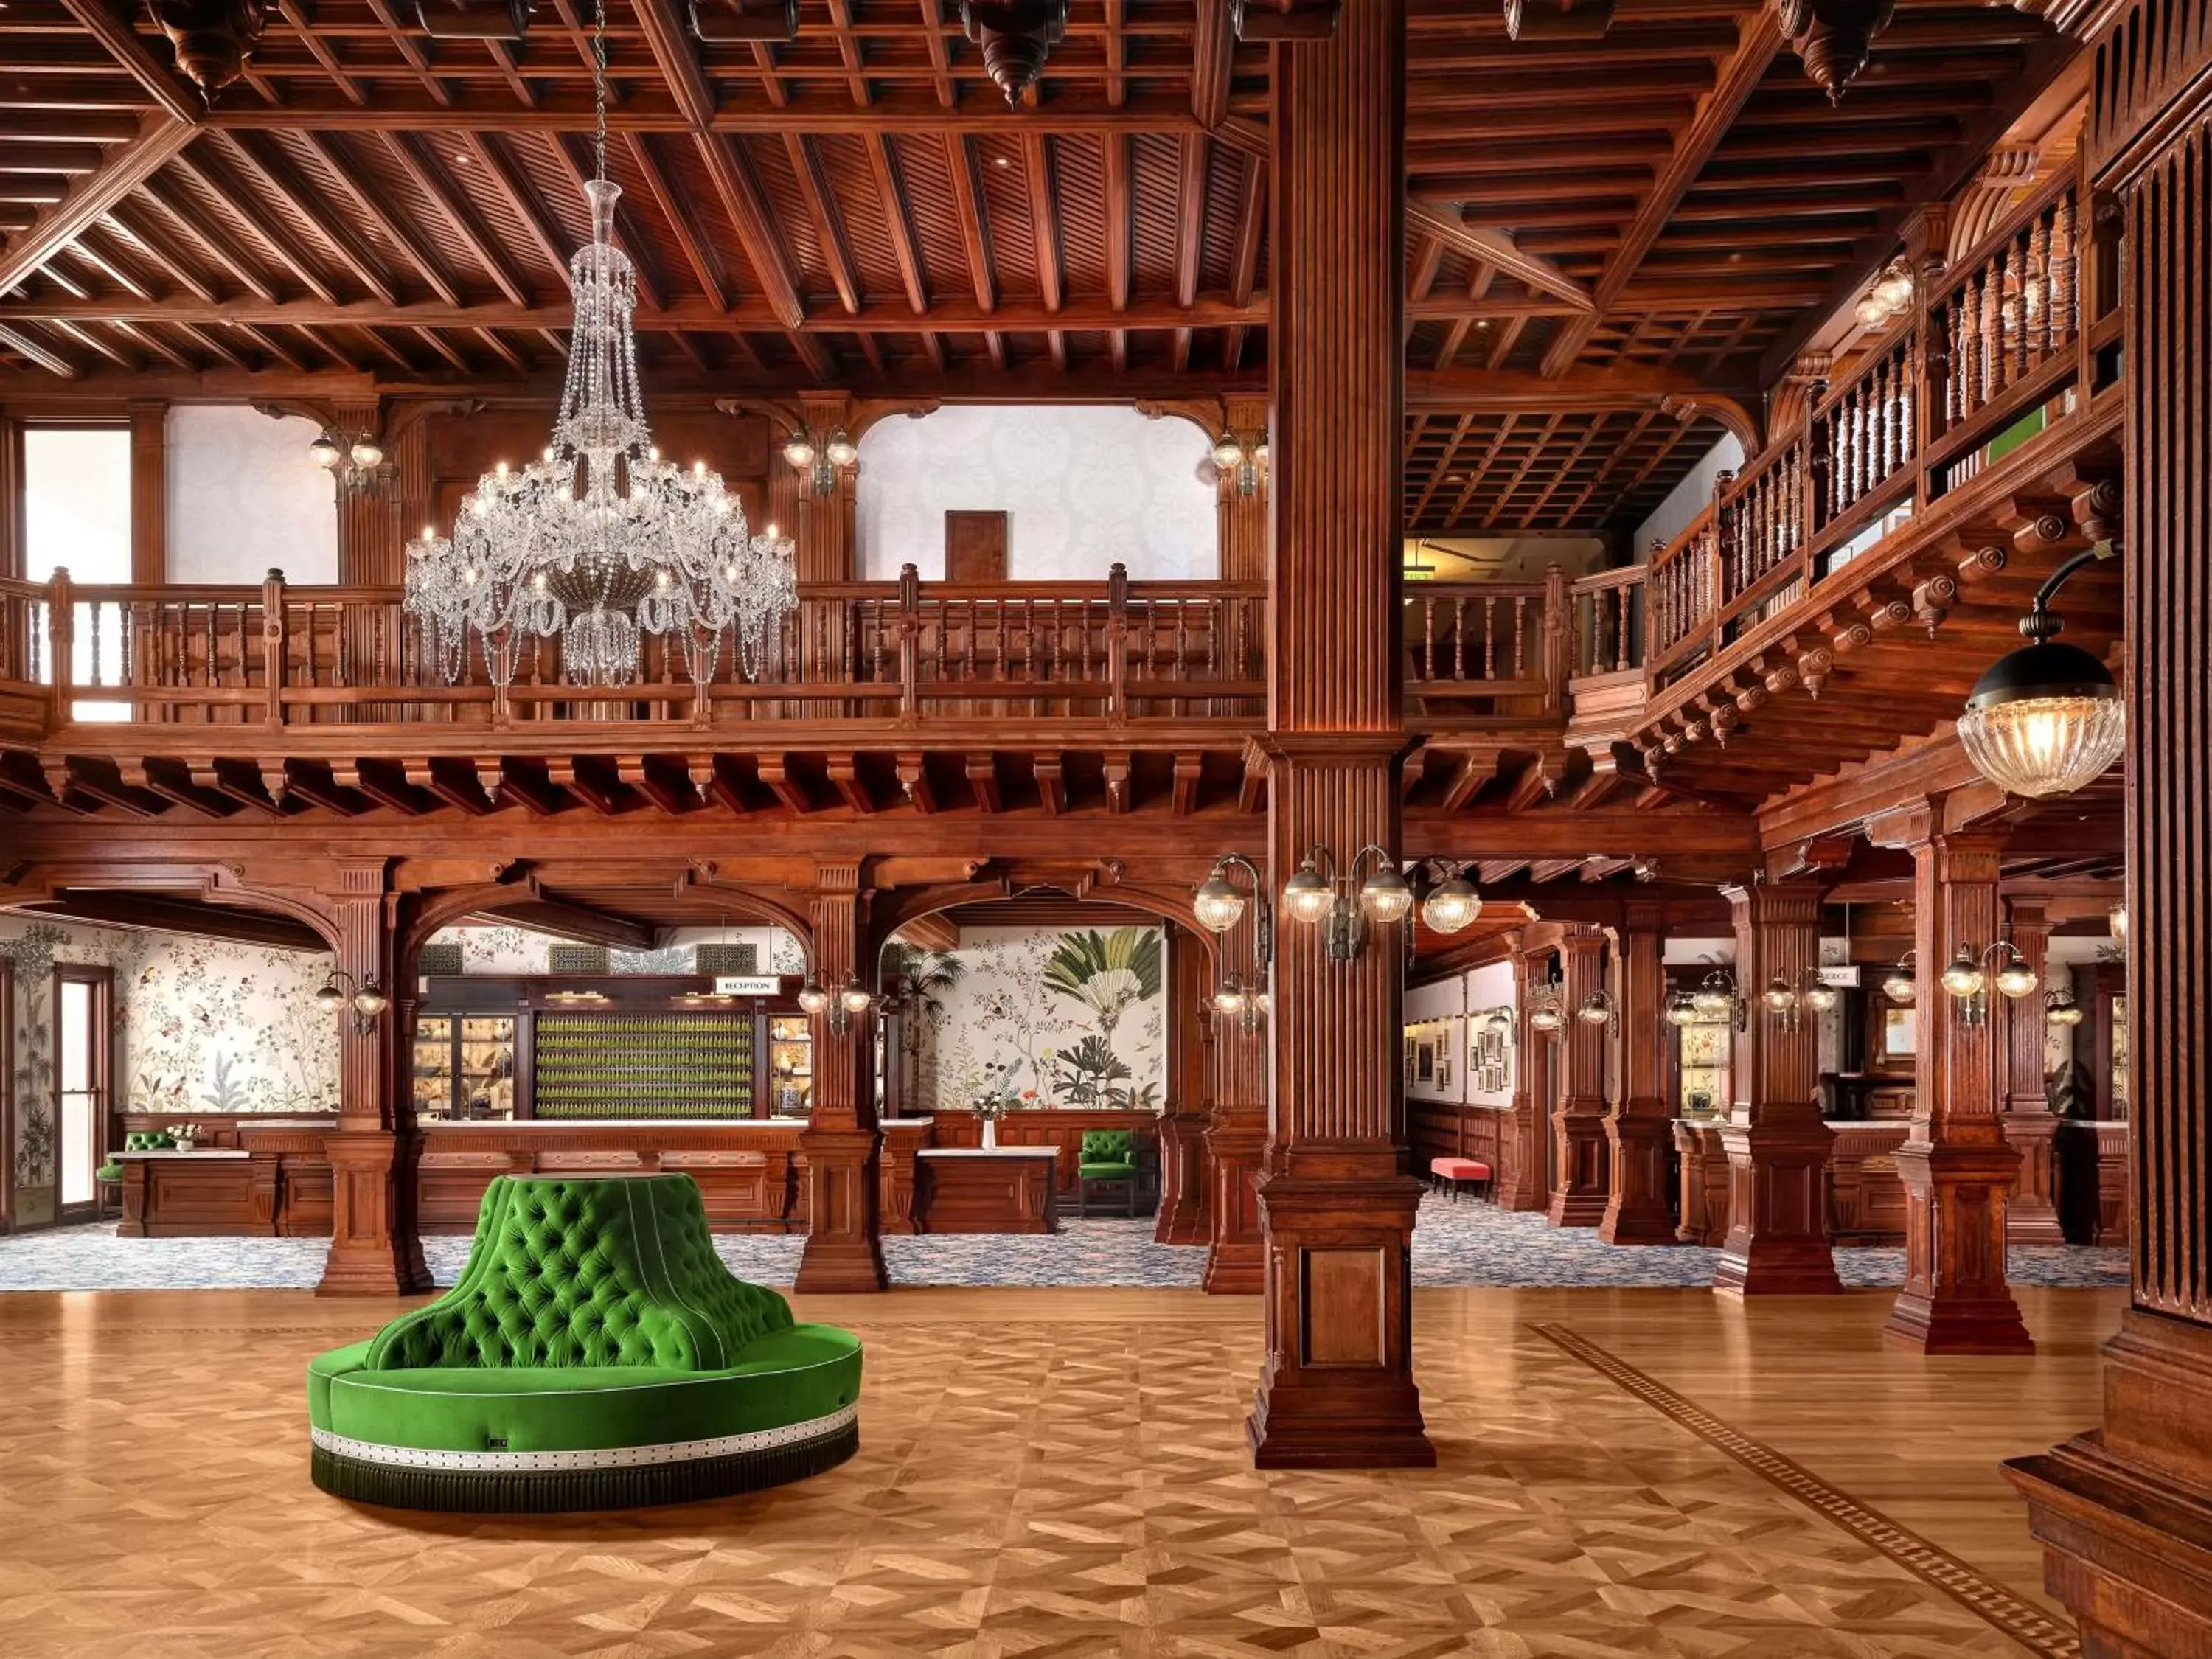 Lobby or reception in Hotel del Coronado, Curio Collection by Hilton